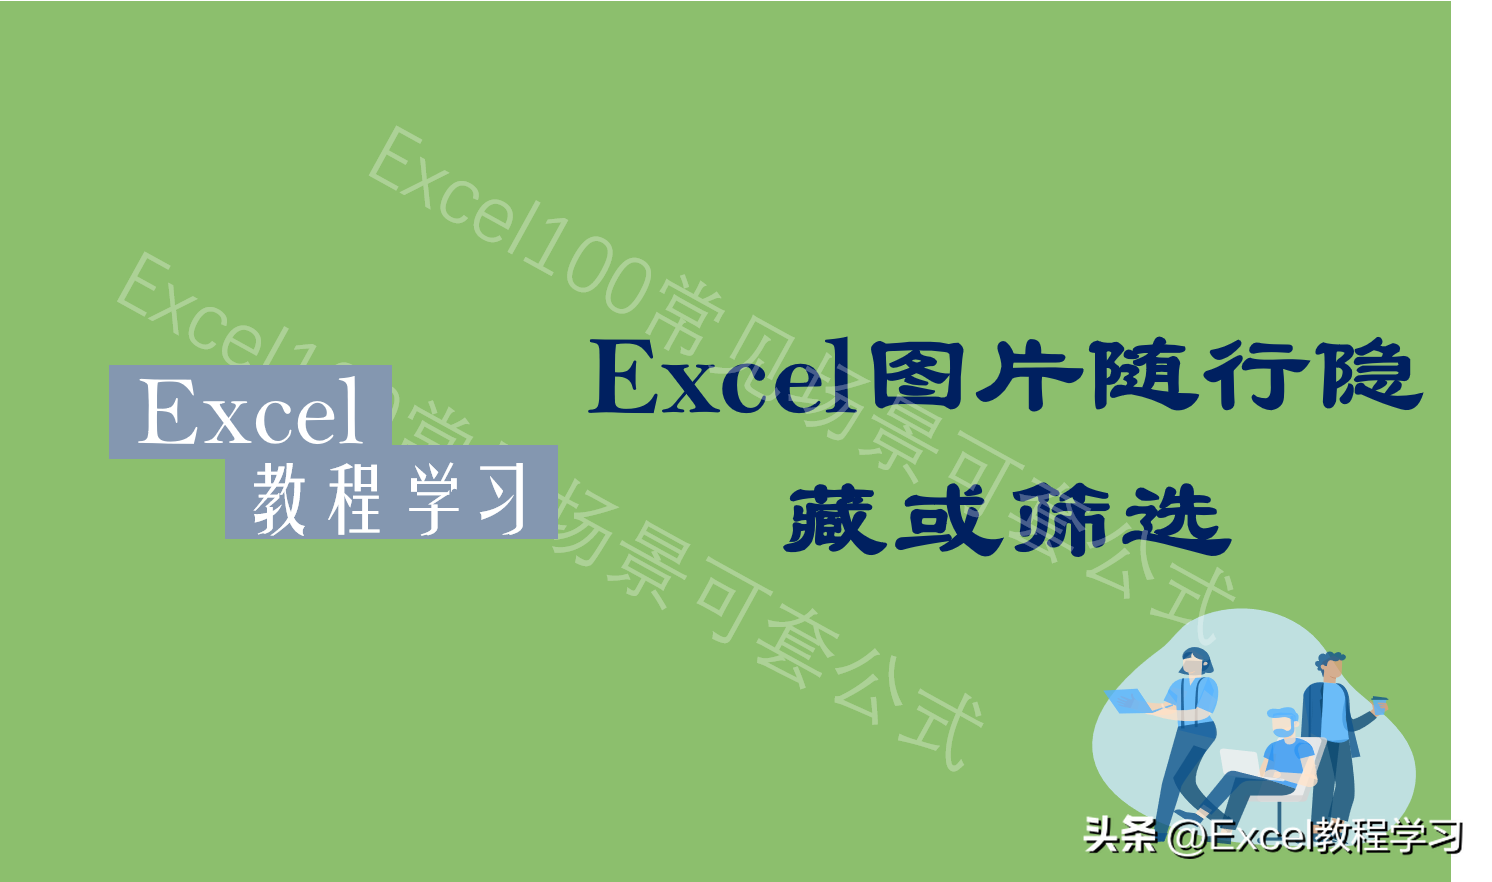 Excel设置图片随表格行列隐藏或筛选的两个方法